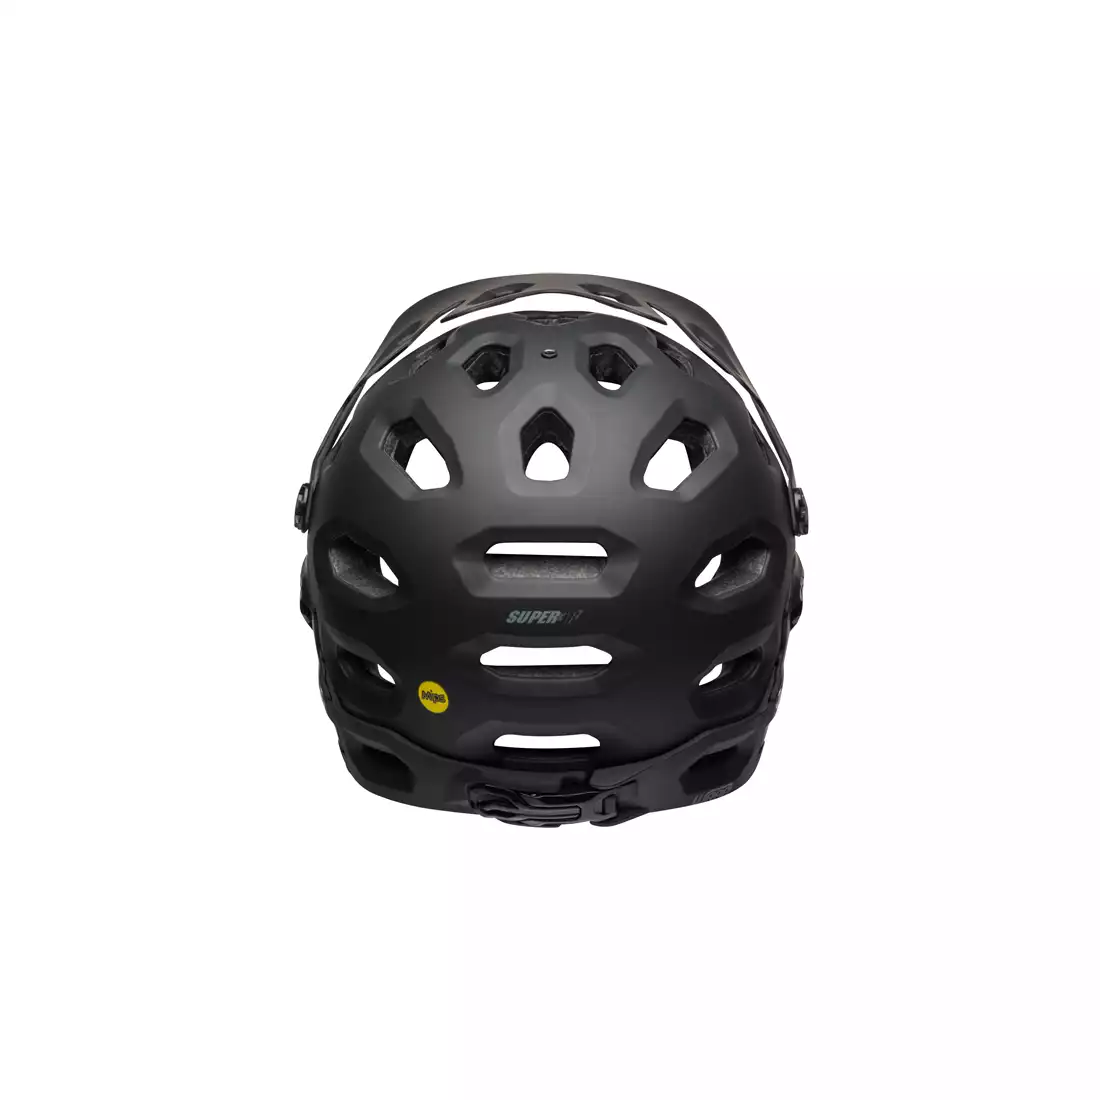 Helmet Passen System Super 3R/3 Schwarz Größe S-M 52/59cm BER001 BELL Rad 